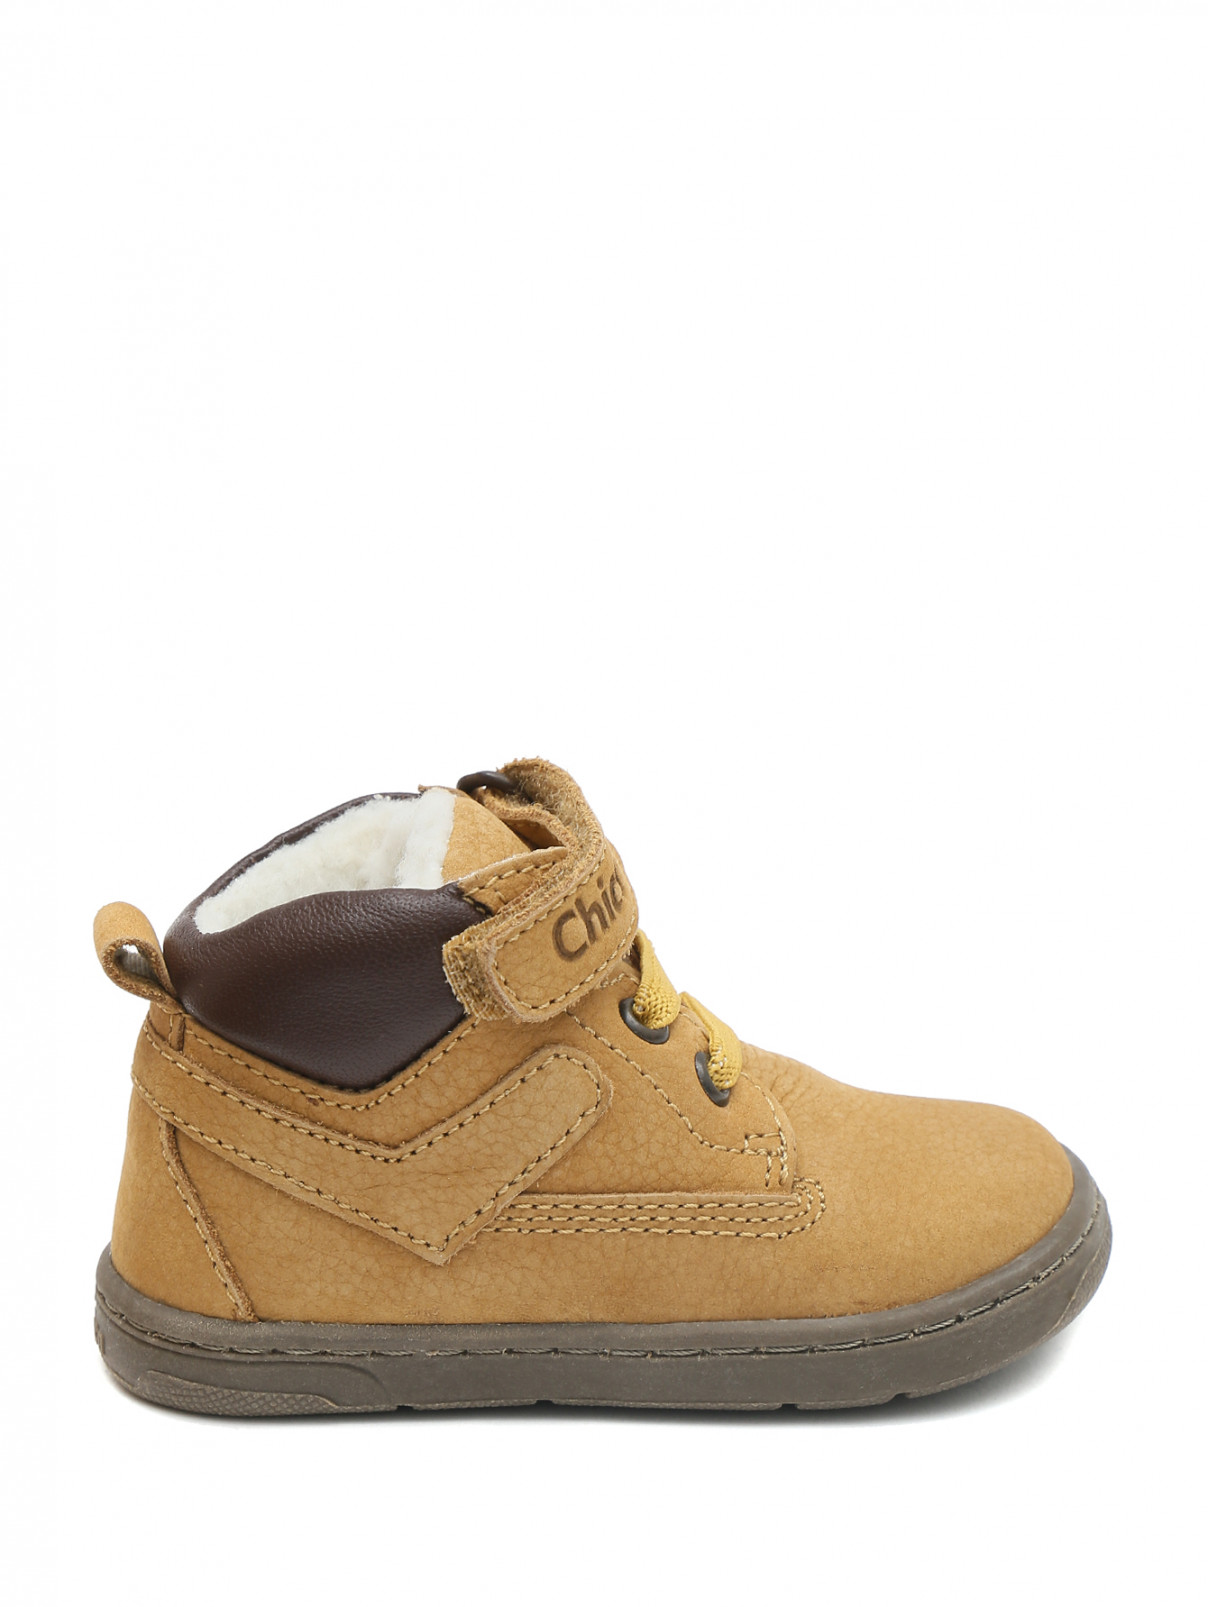 Утепленные замшевые ботинки на шнурках и липучке Chicco  –  Обтравка1  – Цвет:  Бежевый